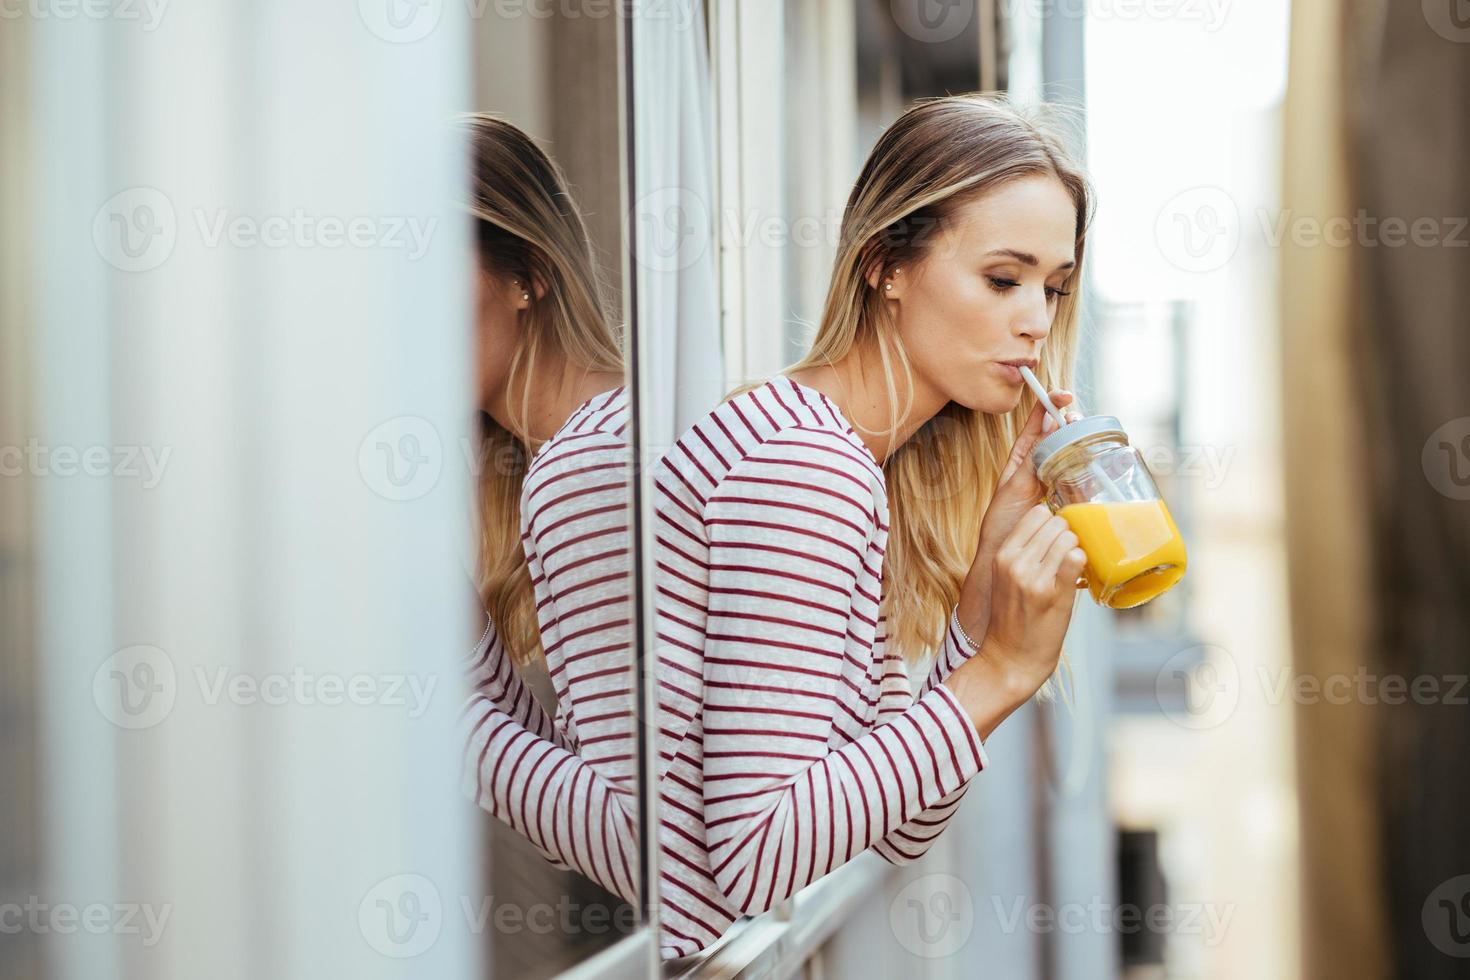 jonge vrouw die een glas natuurlijk sinaasappelsap drinkt, leunend uit het raam van haar huis. foto